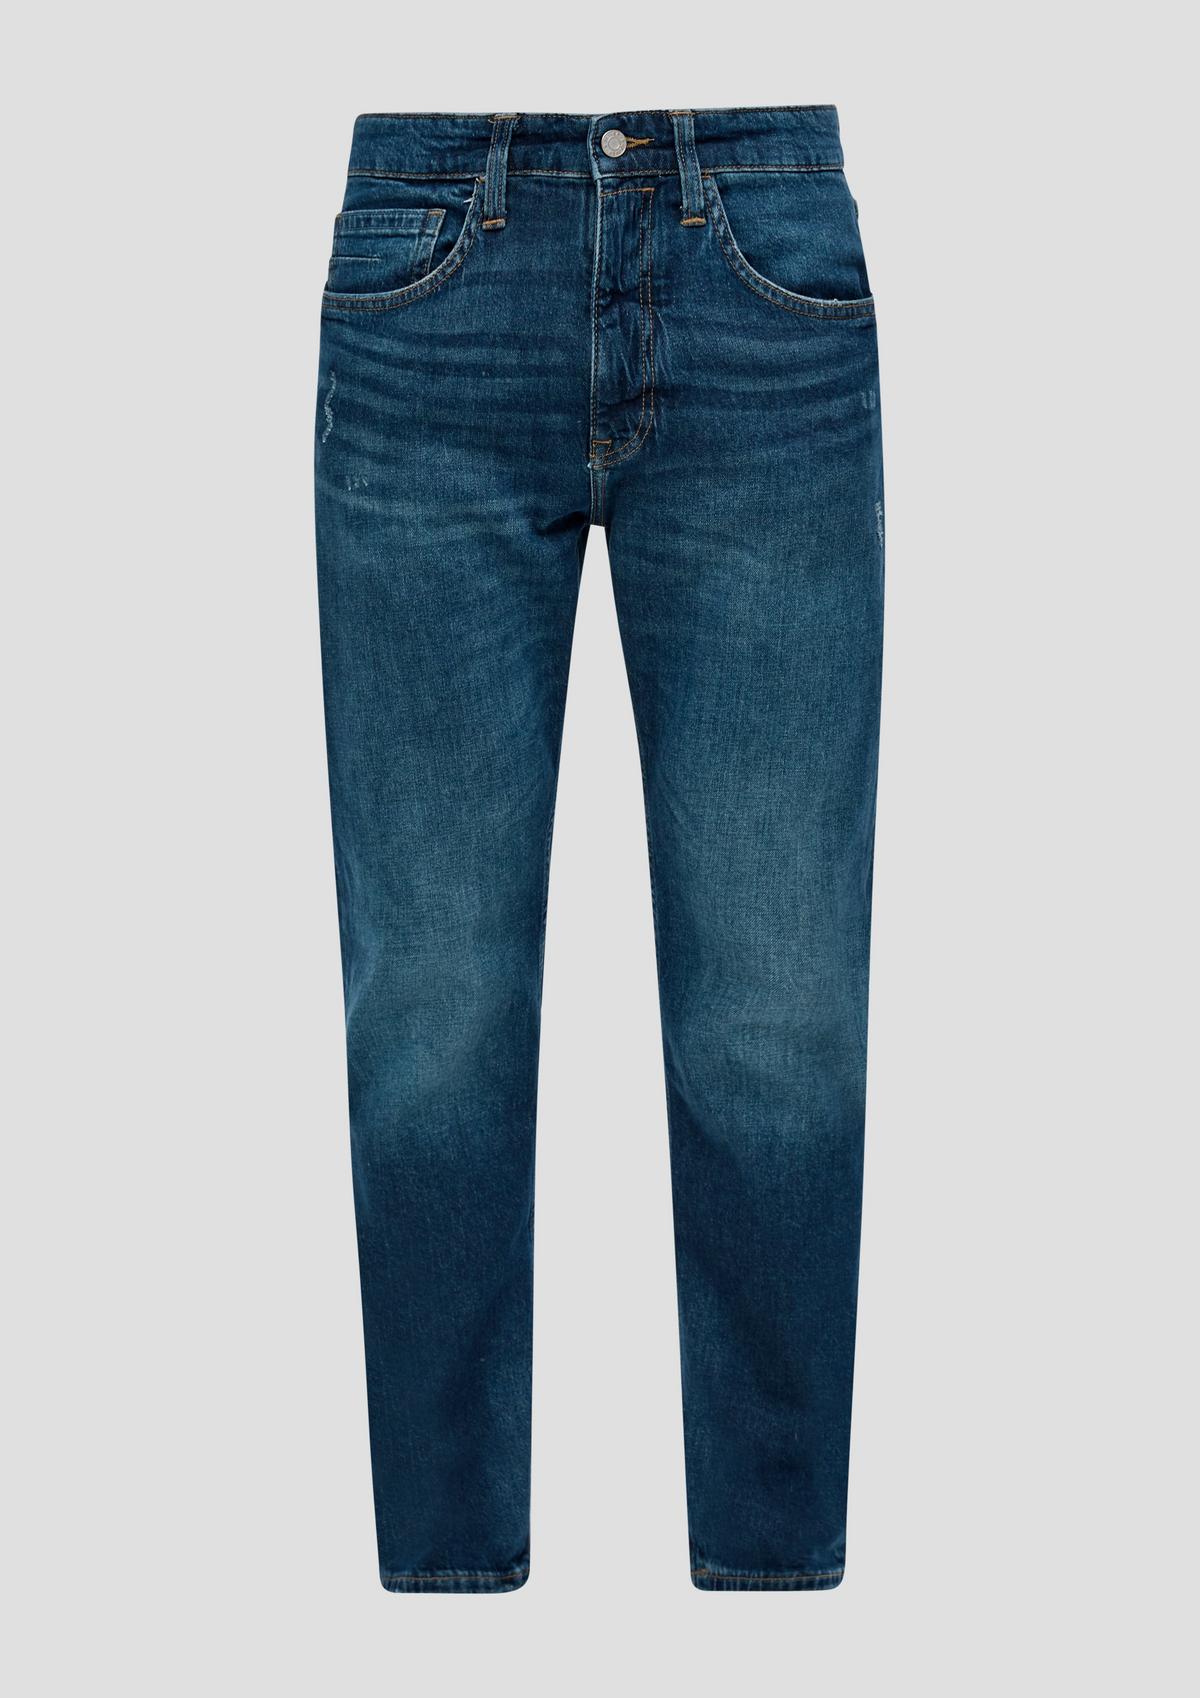 s.Oliver Jeans hlače / kroj Regular Fit / High Rise / Tapered Leg